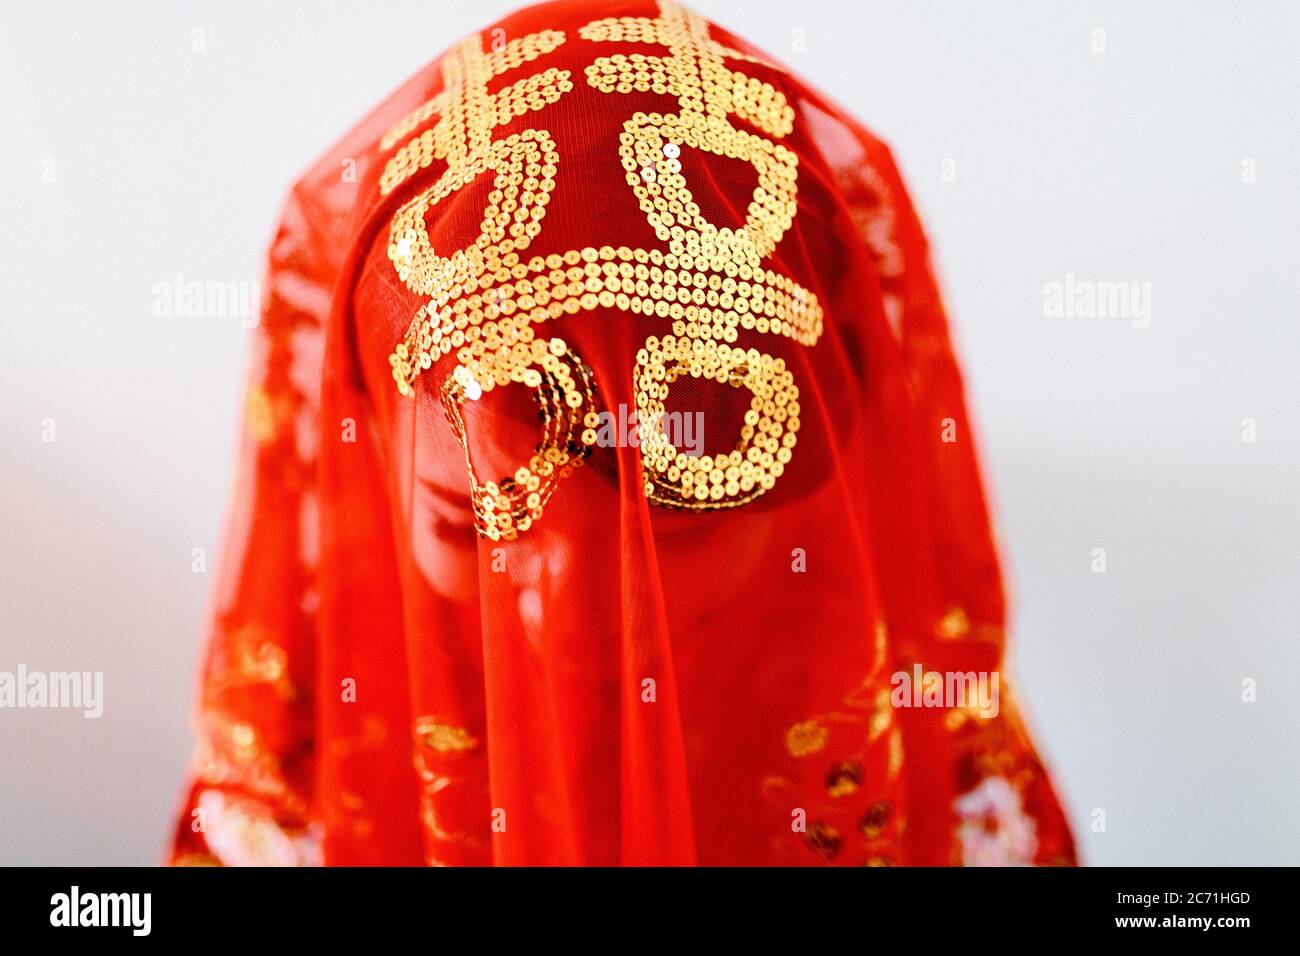 Penang, Malesia - 09 gennaio 2016 : una sposa di un tradizionale matrimonio cinese che ricopre la testa con un velo rosso con le parole 'prosperità' a Bayan Foto Stock